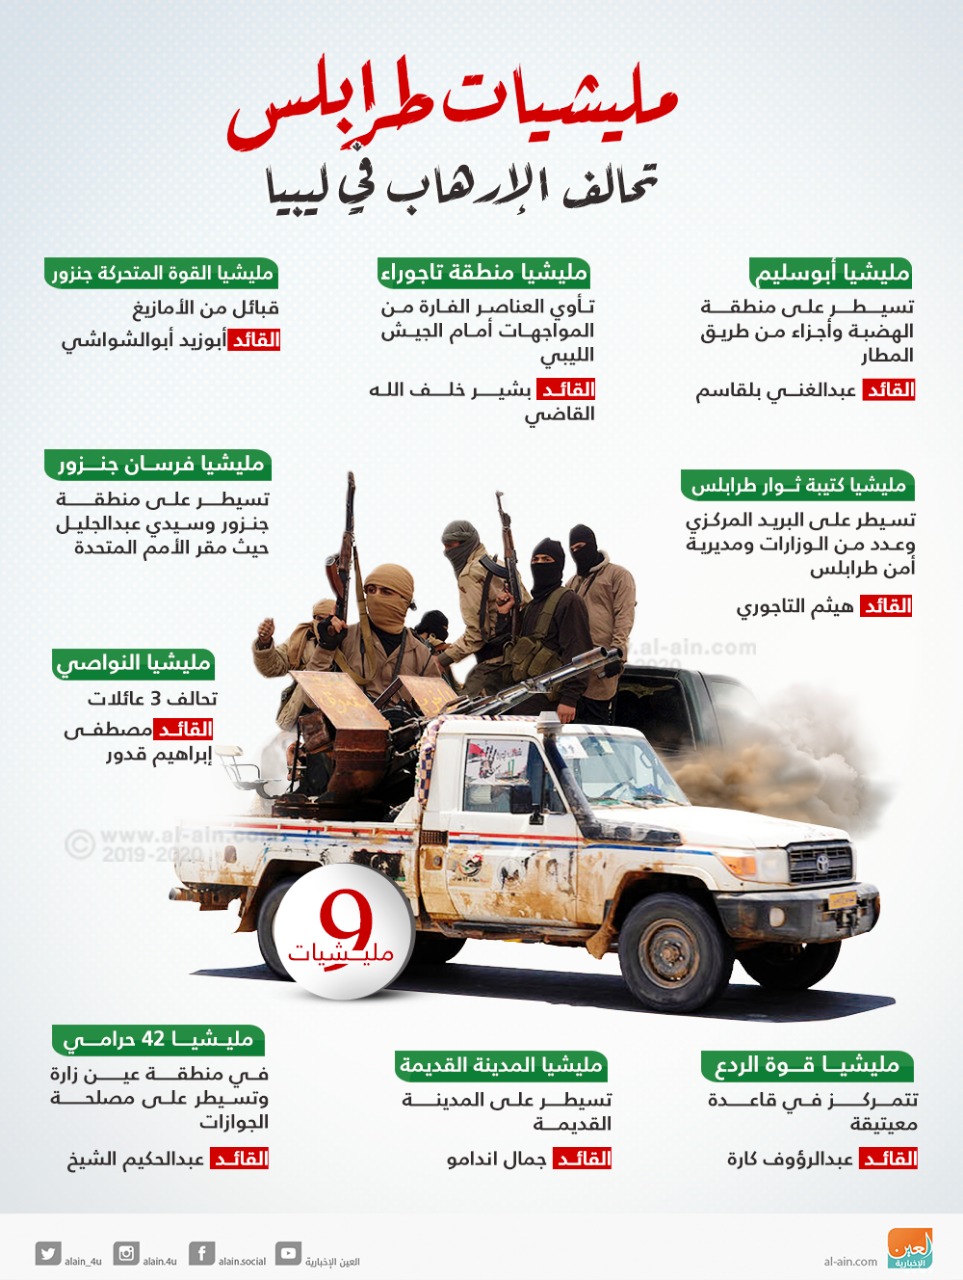 الجيش الليبي داعش يظهر بطرابلس بعد مرتزقة أردوغان